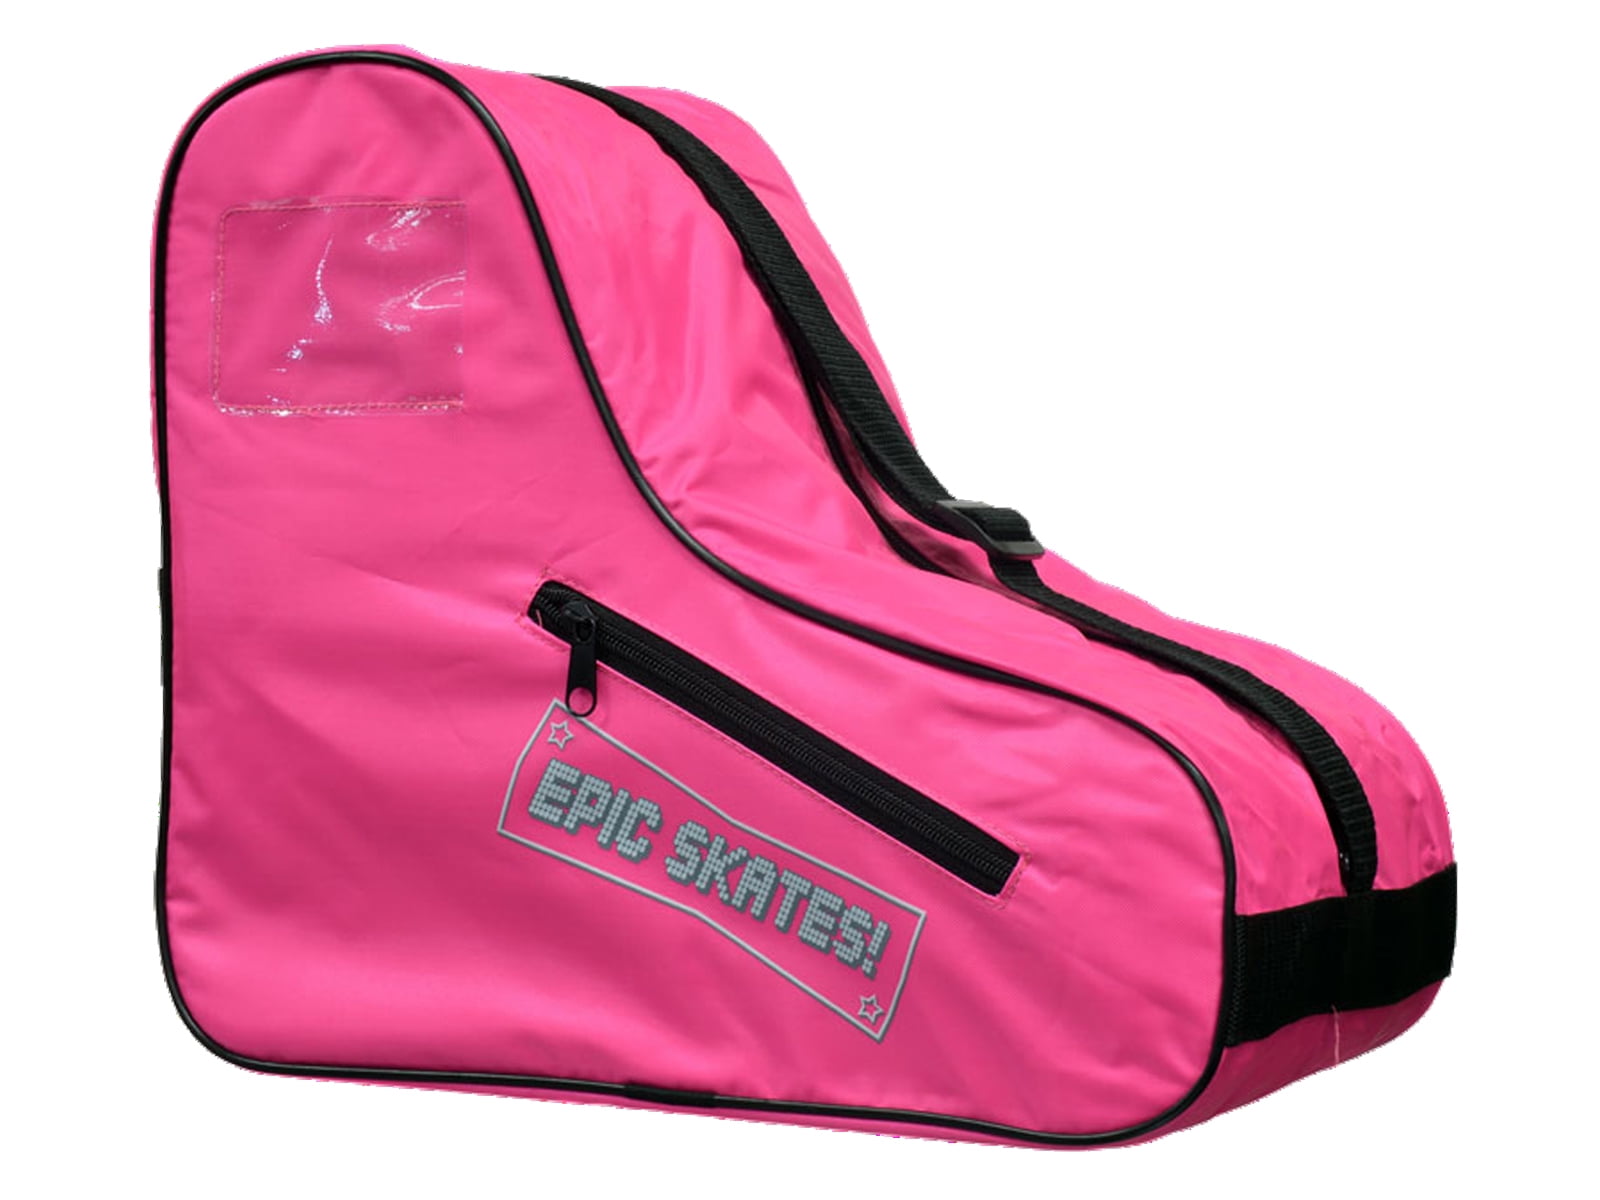 Details about   2 Pcs Roller Skating Bag Adjustable Shoulder Strap Ice Skates Carry Bag Case 